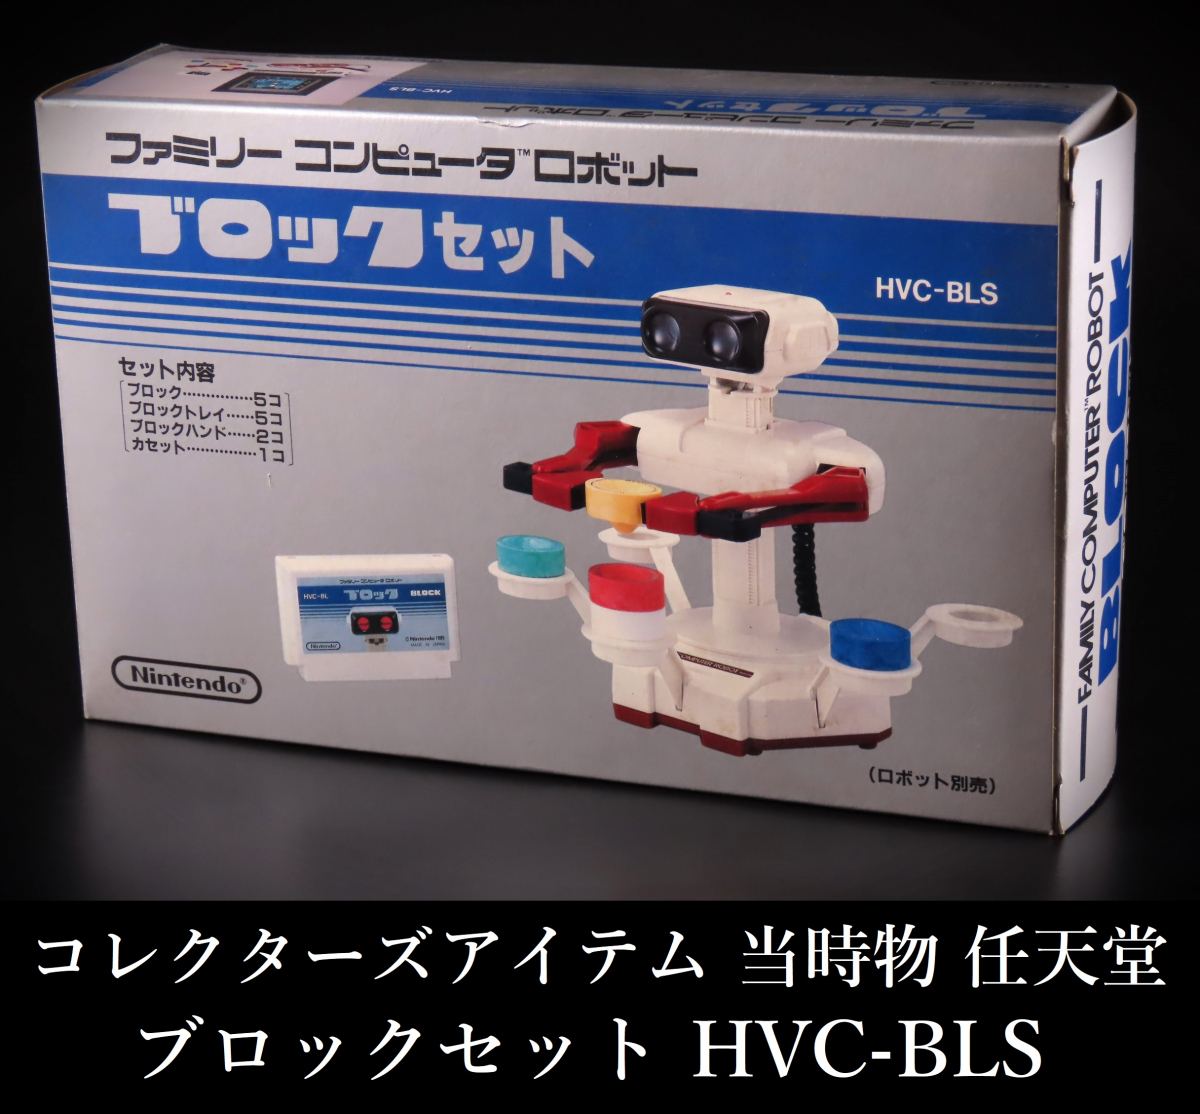 【晃】デッドストック 当時物 任天堂 ブロックセット ファミリーコンピュータ ロボット HVC-BLS 未使用保管品 コレクターズアイテム_画像1